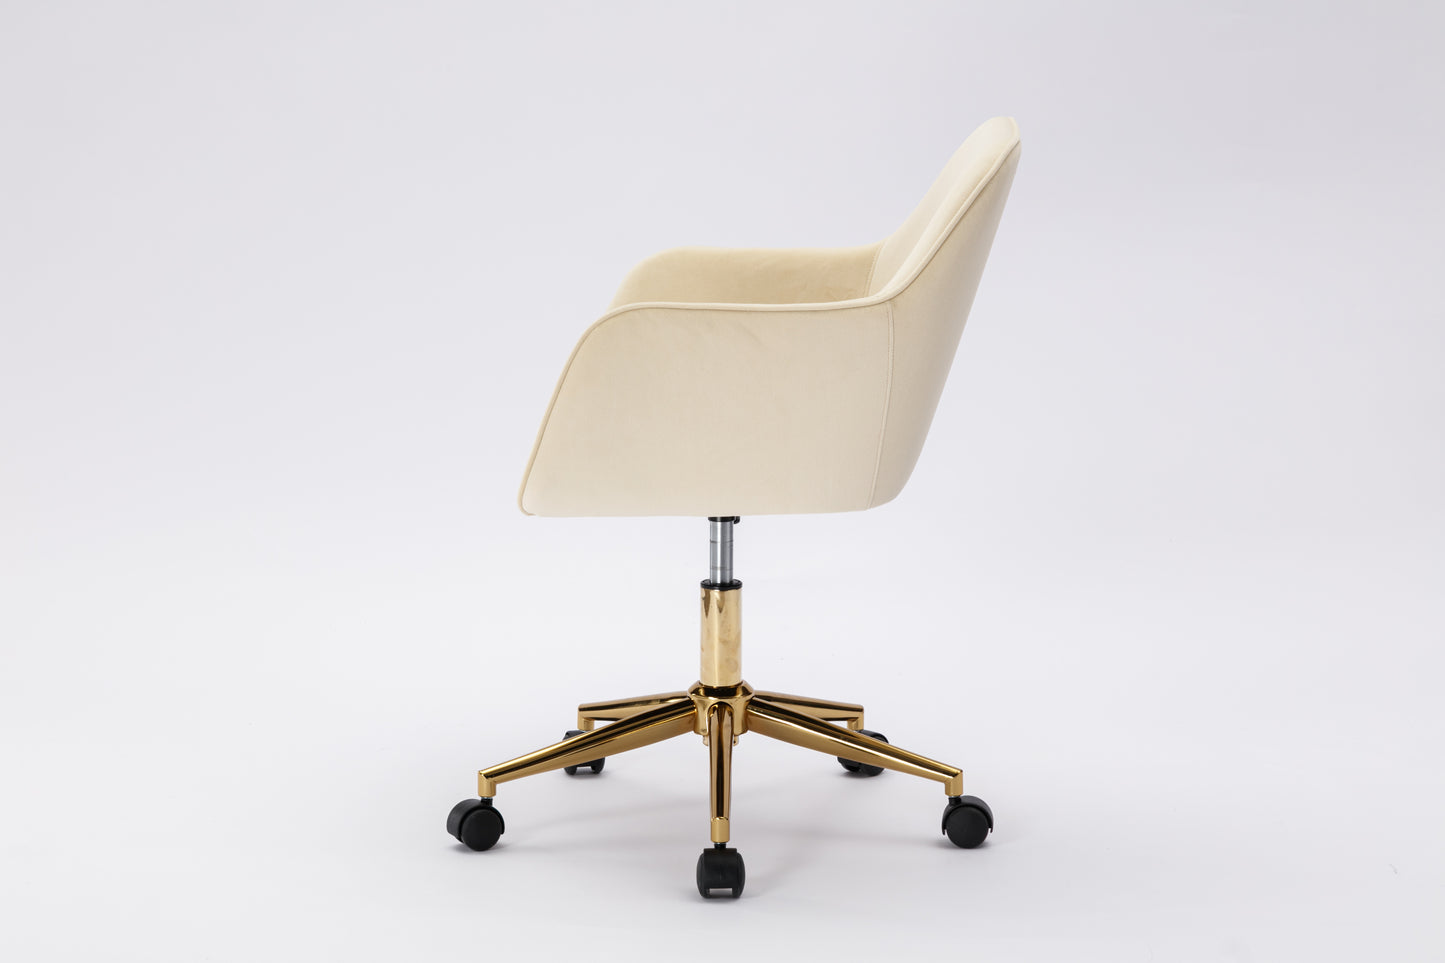 Modern Velvet Fabric Material Adjustable Height 360 revolving Home Office Chair for Indoor（Beige） - Ukerr Home